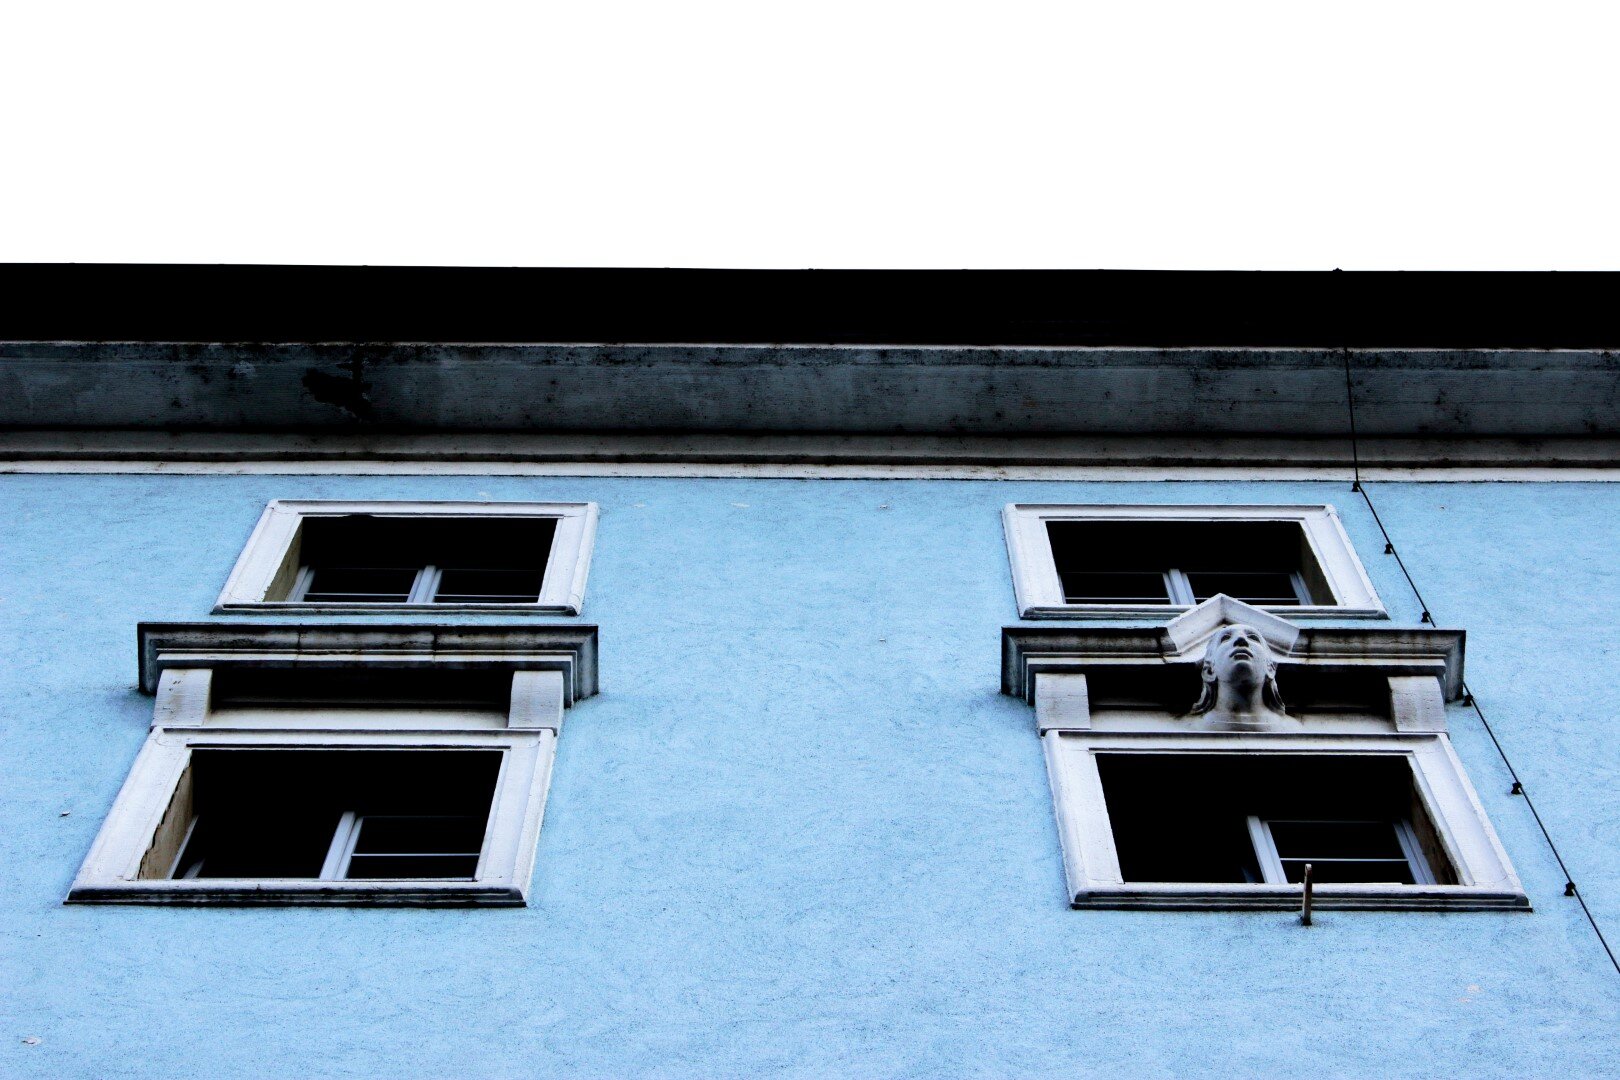 C, Postgebäude Fenster (Groß).JPG